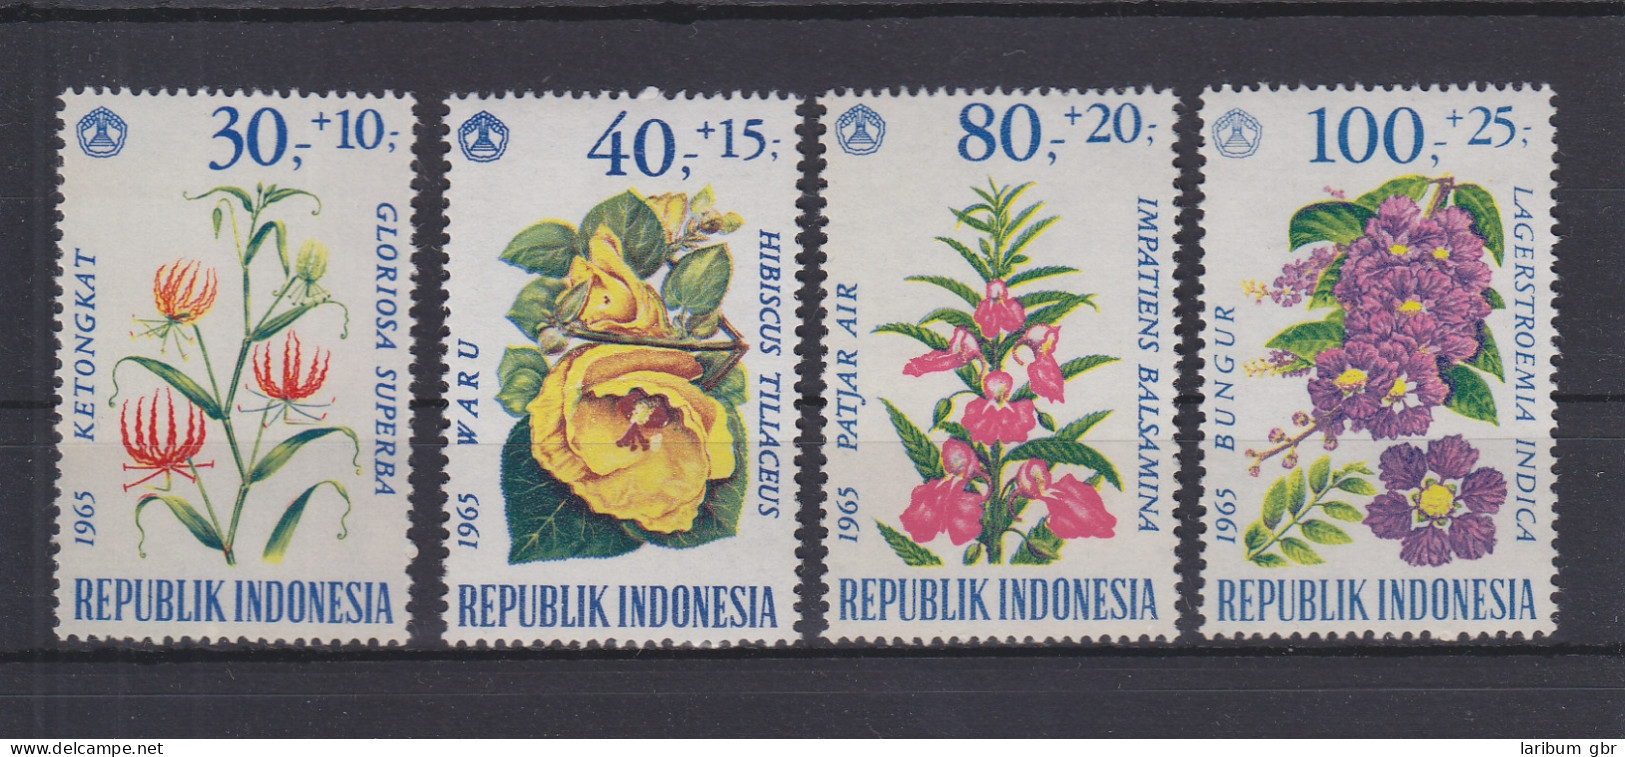 Indonesien 499-502 Postfrisch Blumen, Indonesia MNH #GE127 - Indonesia